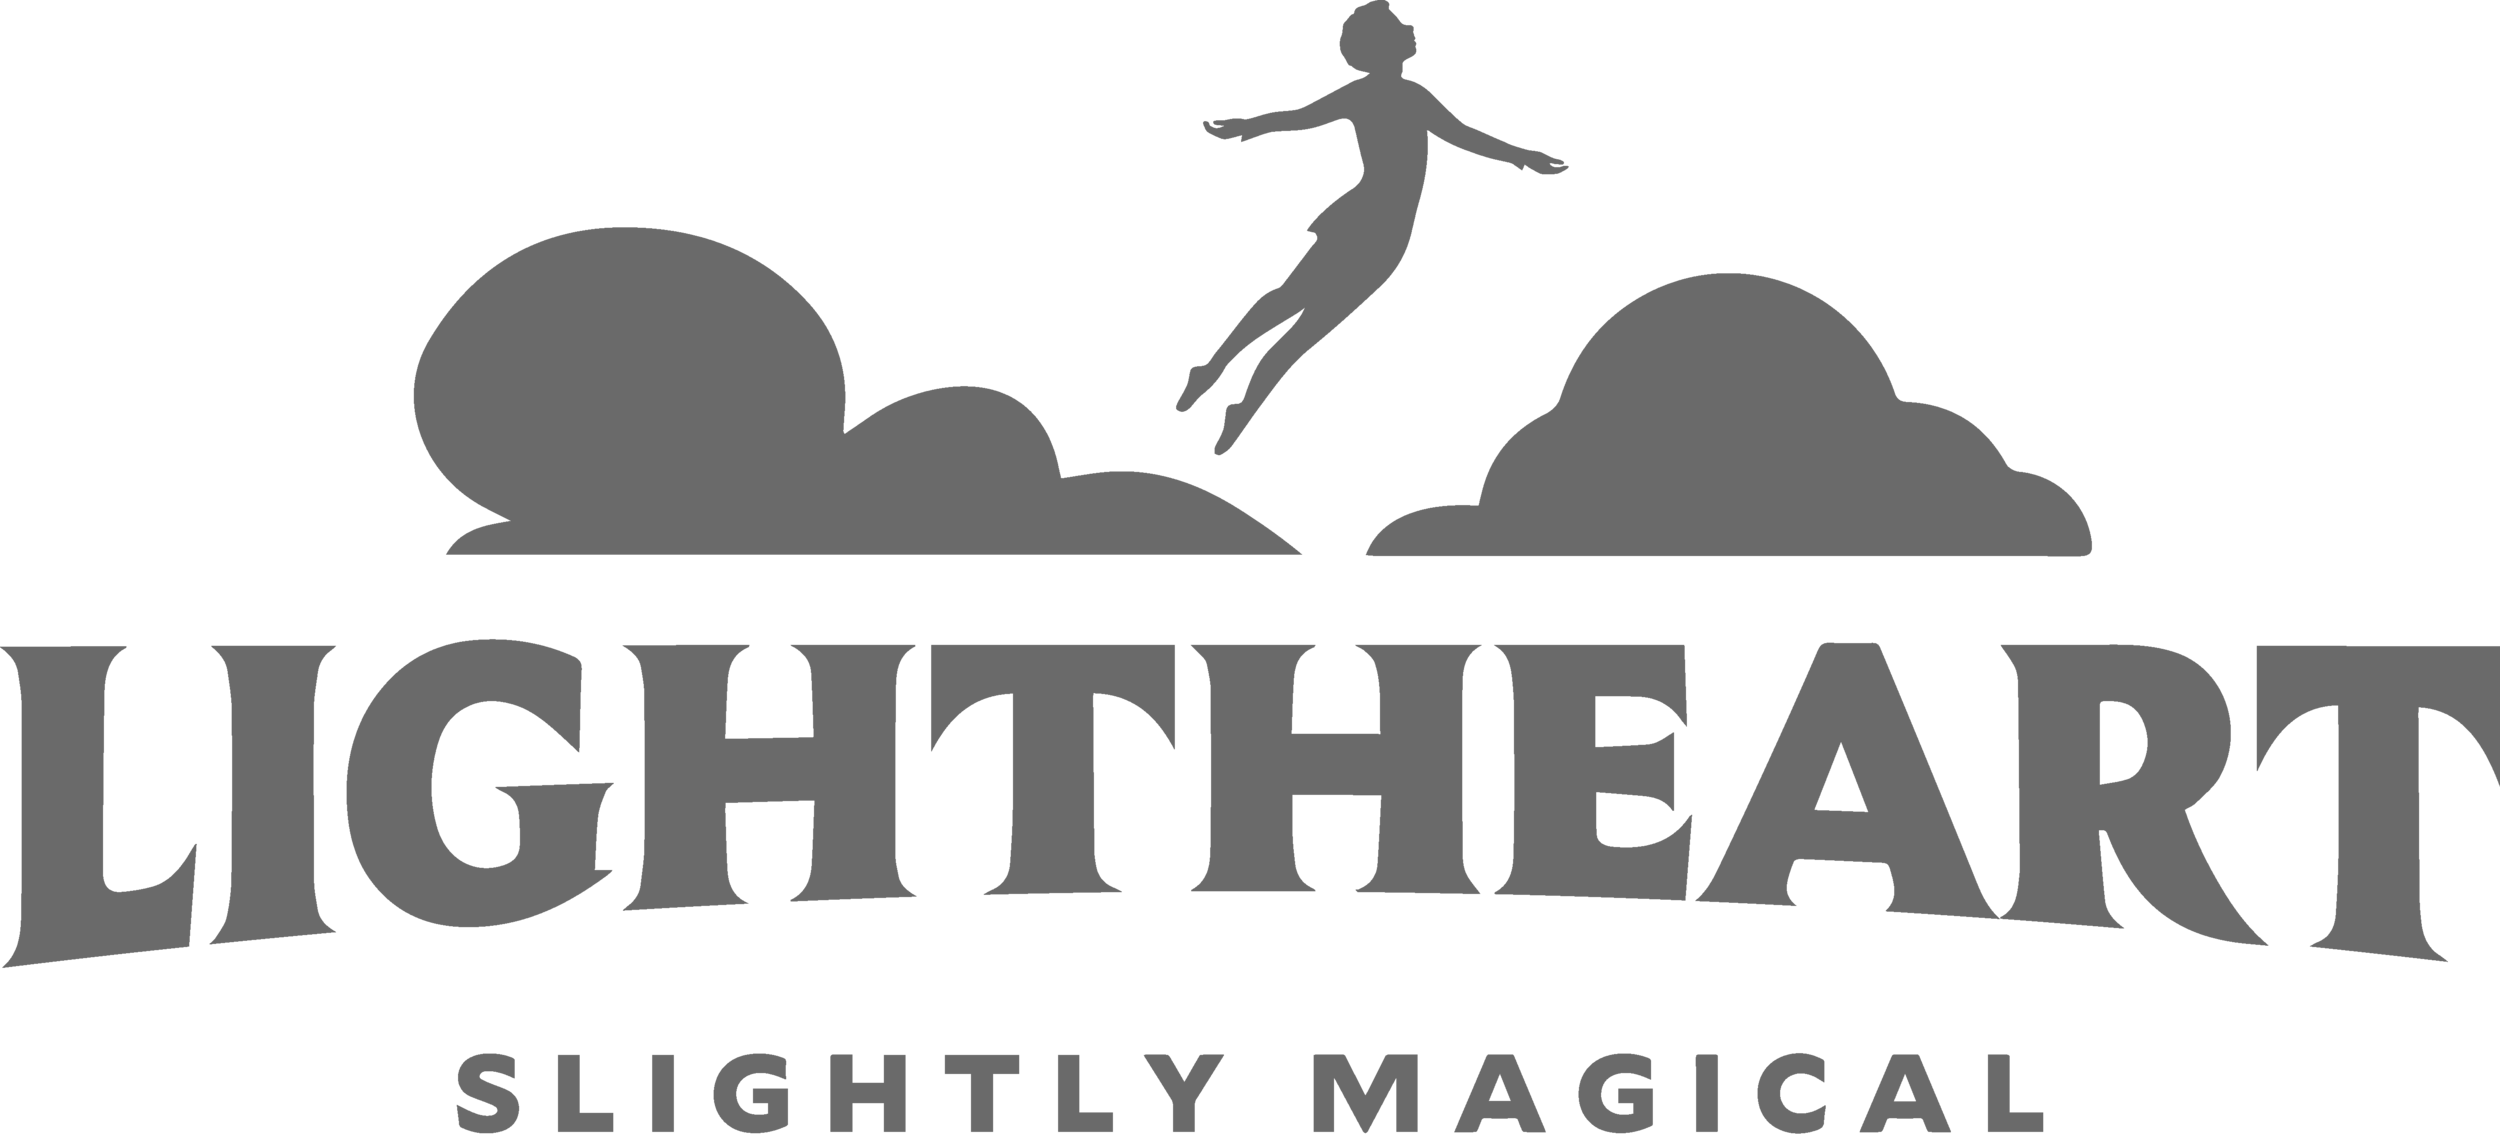 lightheart-logo.png